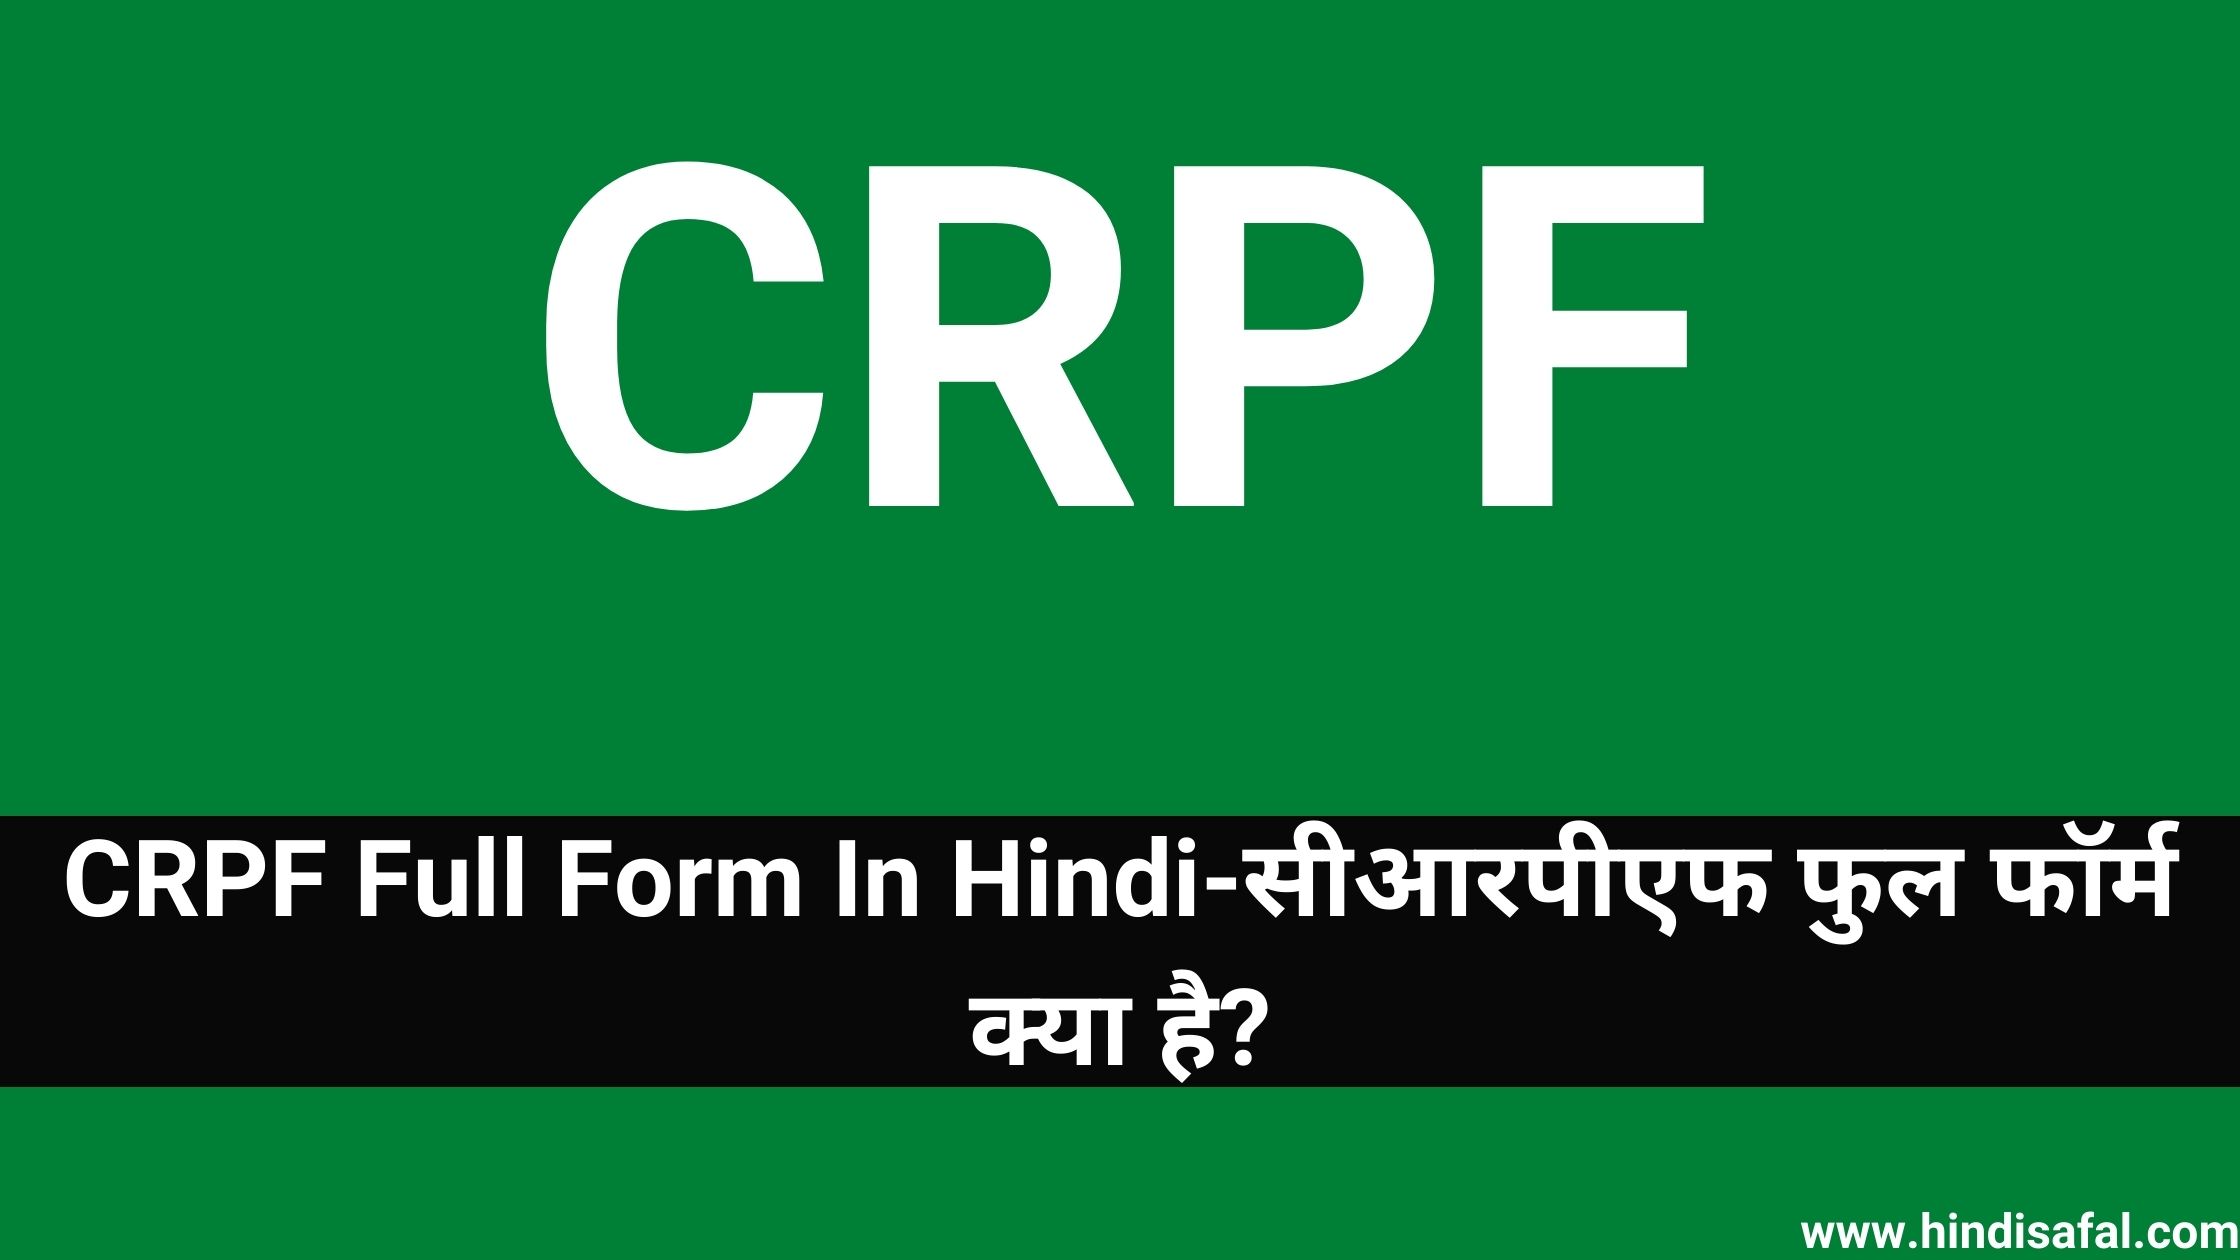 CRPF Full Form In Hindi-सीआरपीएफ फुल फॉर्म क्या है?